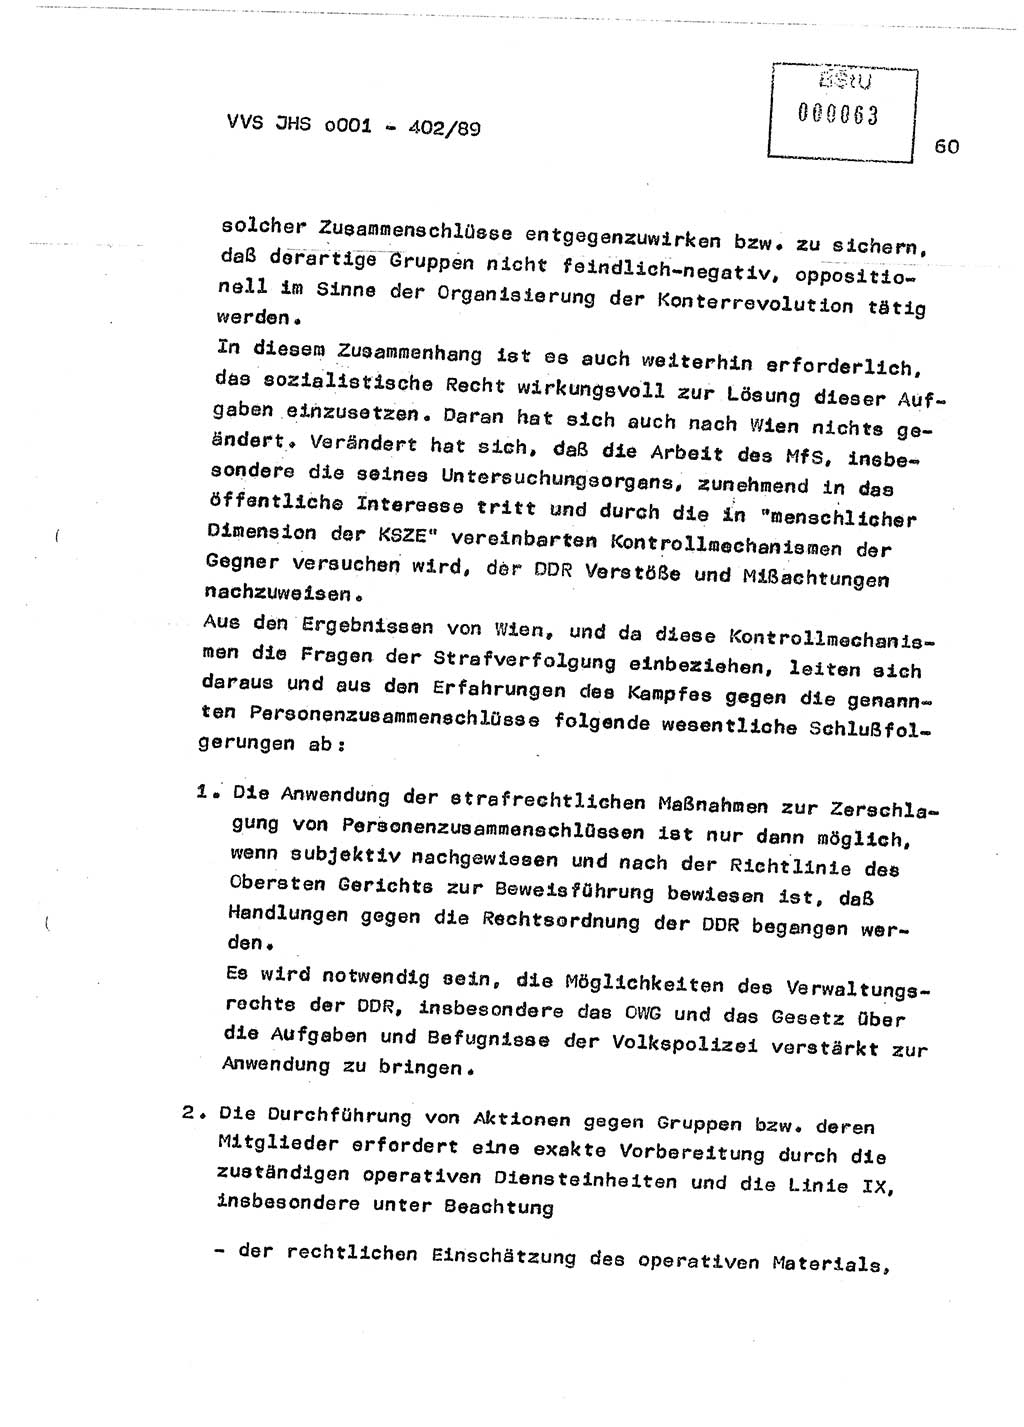 Diplomarbeit Major Günter Müller (HA Ⅸ/9), Ministerium für Staatssicherheit (MfS) [Deutsche Demokratische Republik (DDR)], Juristische Hochschule (JHS), Vertrauliche Verschlußsache (VVS) o001-402/89, Potsdam 1989, Seite 60 (Dipl.-Arb. MfS DDR JHS VVS o001-402/89 1989, S. 60)